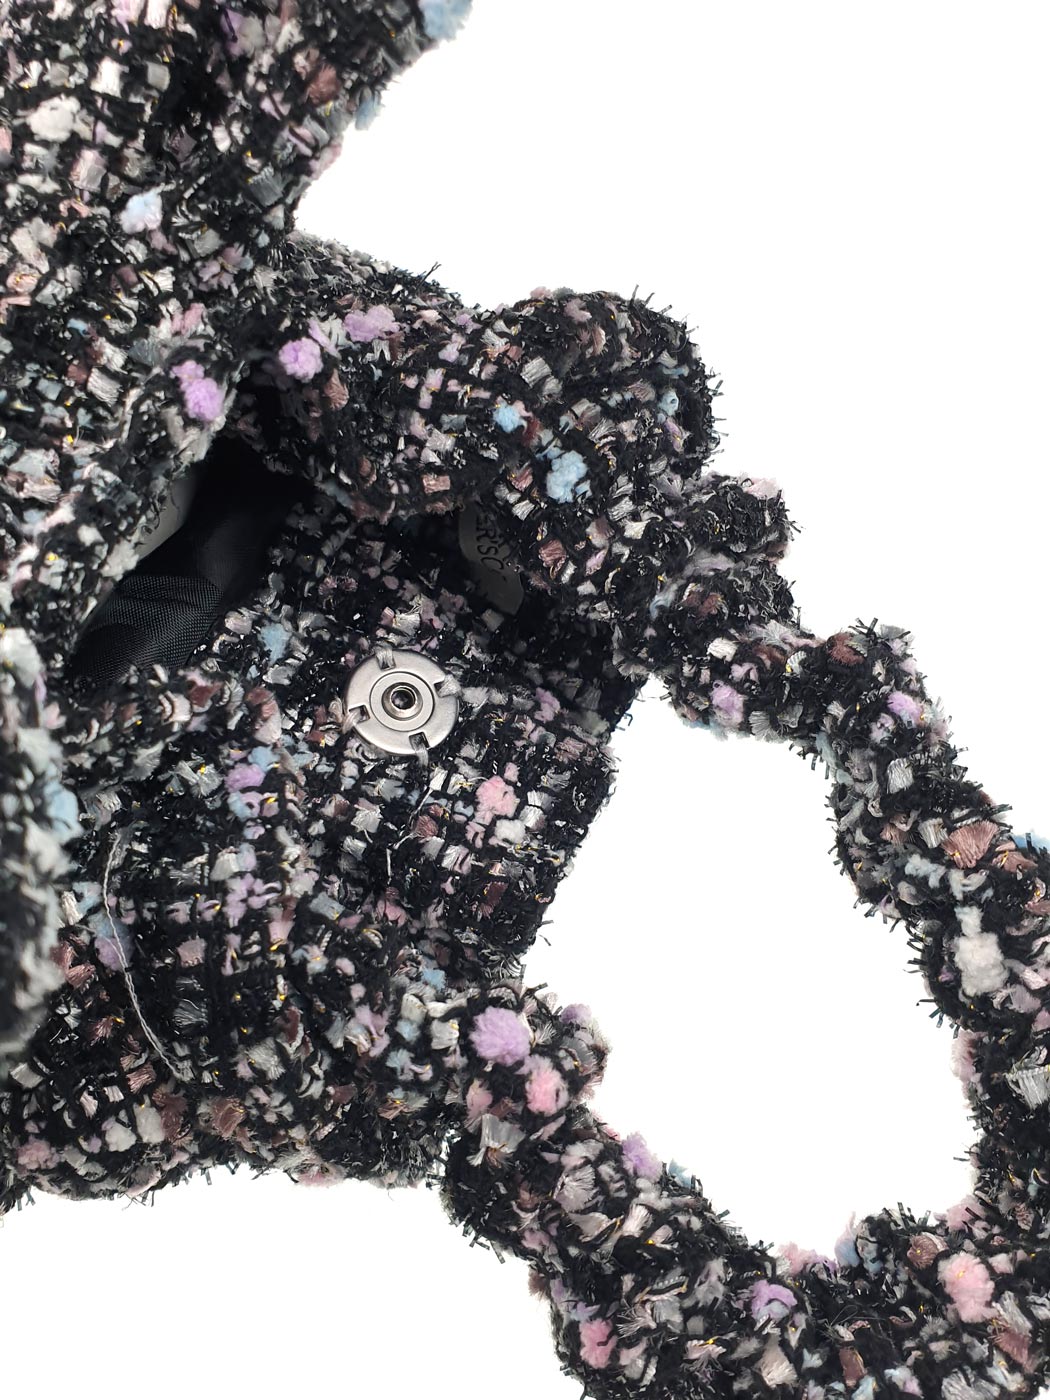 Μίνι τσάντα χειρός tweed διακοσμημένη με στρας πέτρα